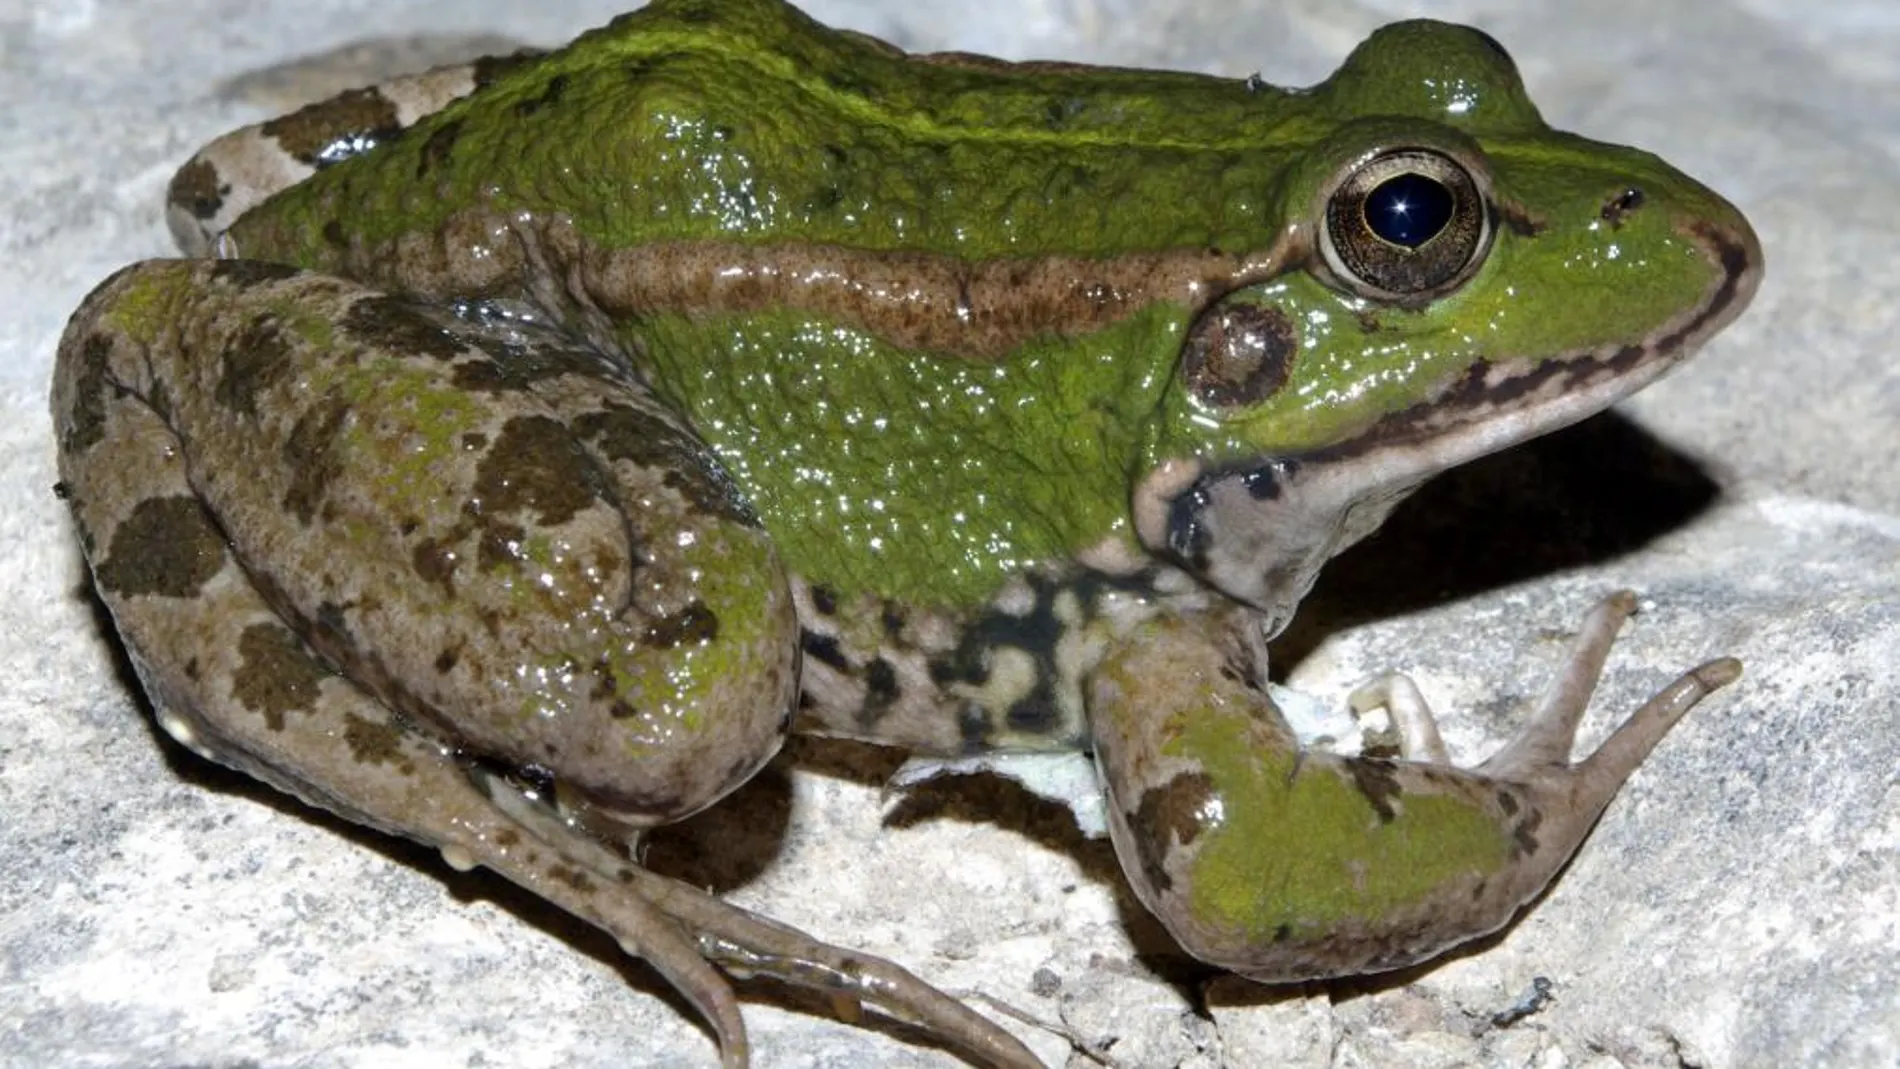 La rana común sucumbe a la llamada al apareamiento de las especies invasoras, lo que la pone en situación de especial vulnerabilidad